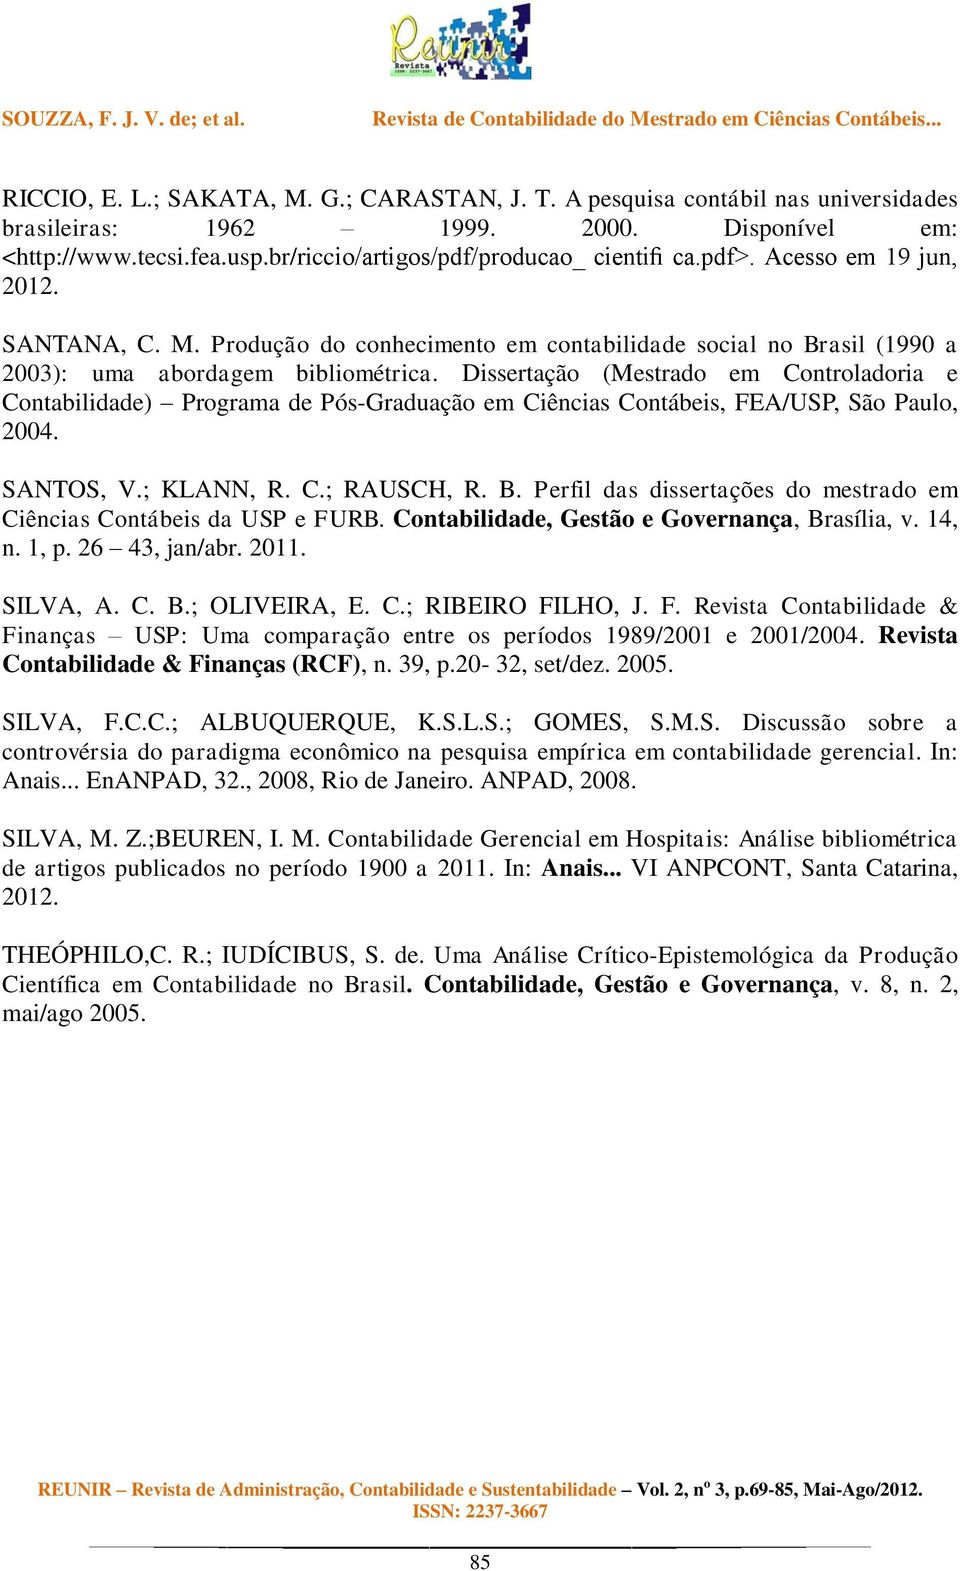 Dissertação (Mestrado em Controladoria e Contabilidade) Programa de Pós-Graduação em Ciências Contábeis, FEA/USP, São Paulo, 2004. SANTOS, V.; KLANN, R. C.; RAUSCH, R. B.